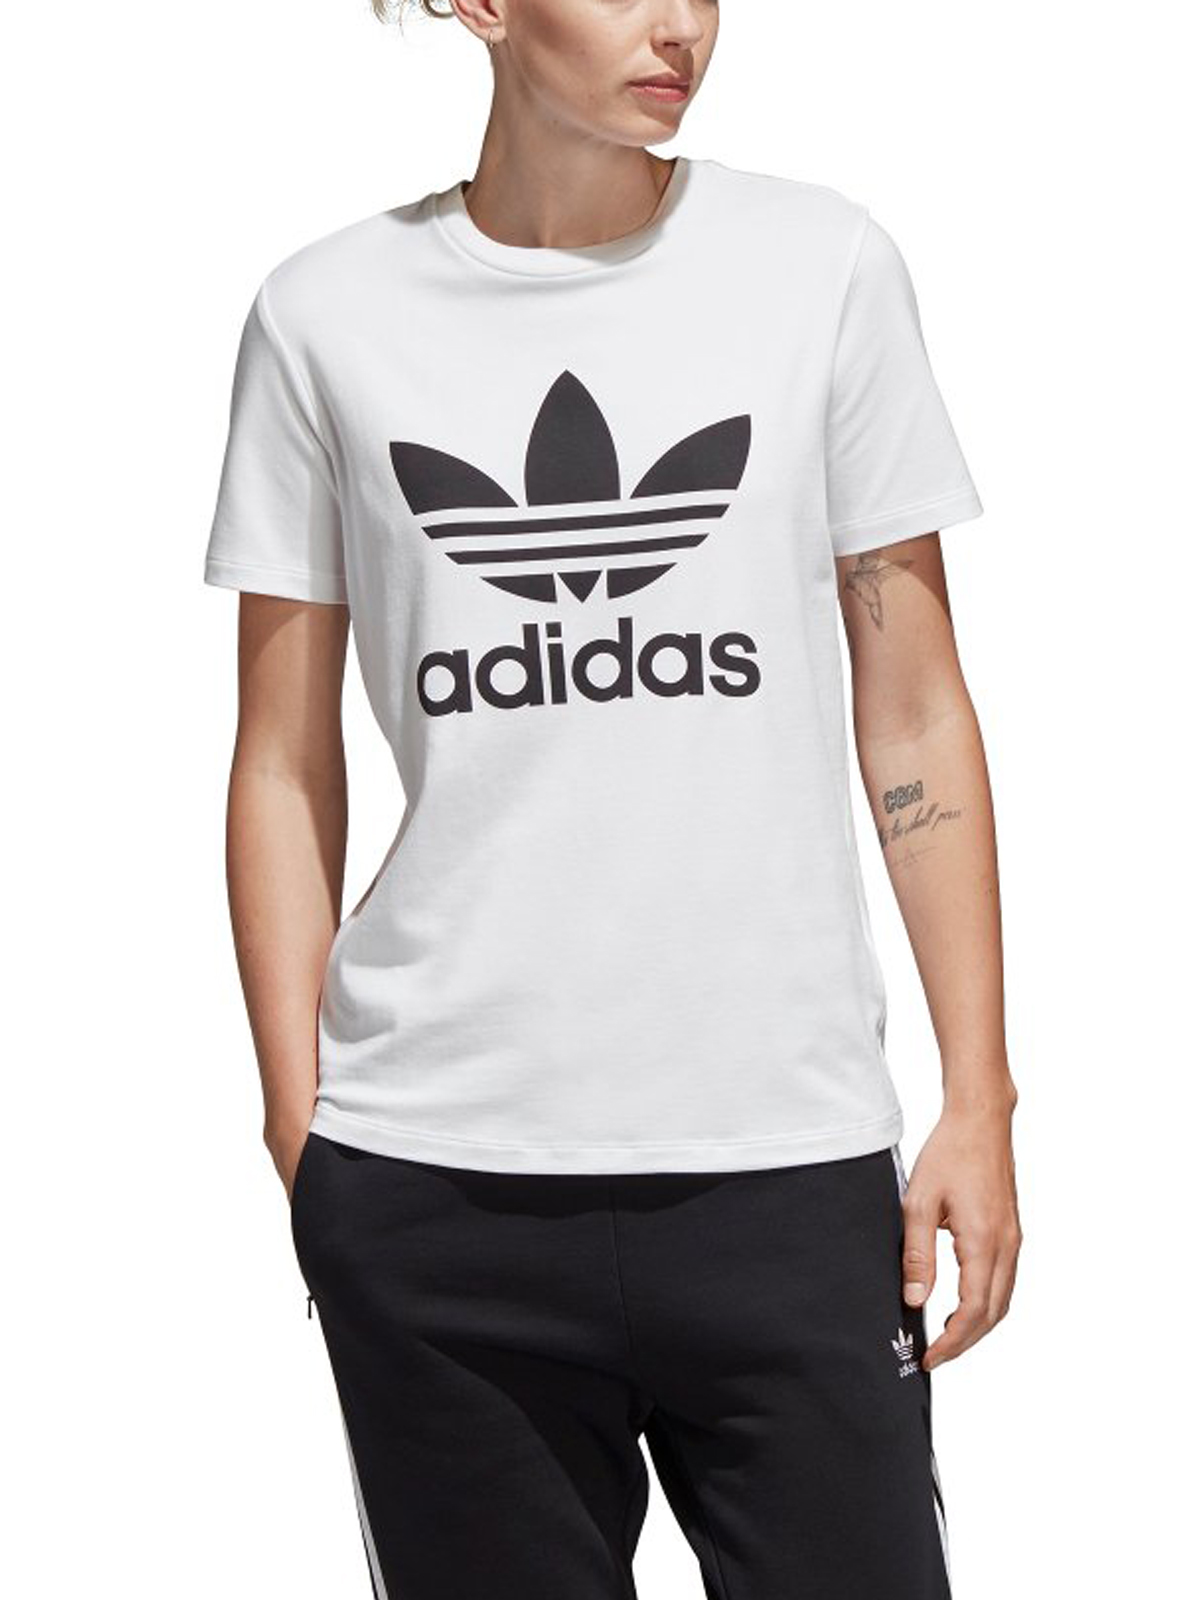   Adidas | Trefoil Logo | Womens T-Shirts